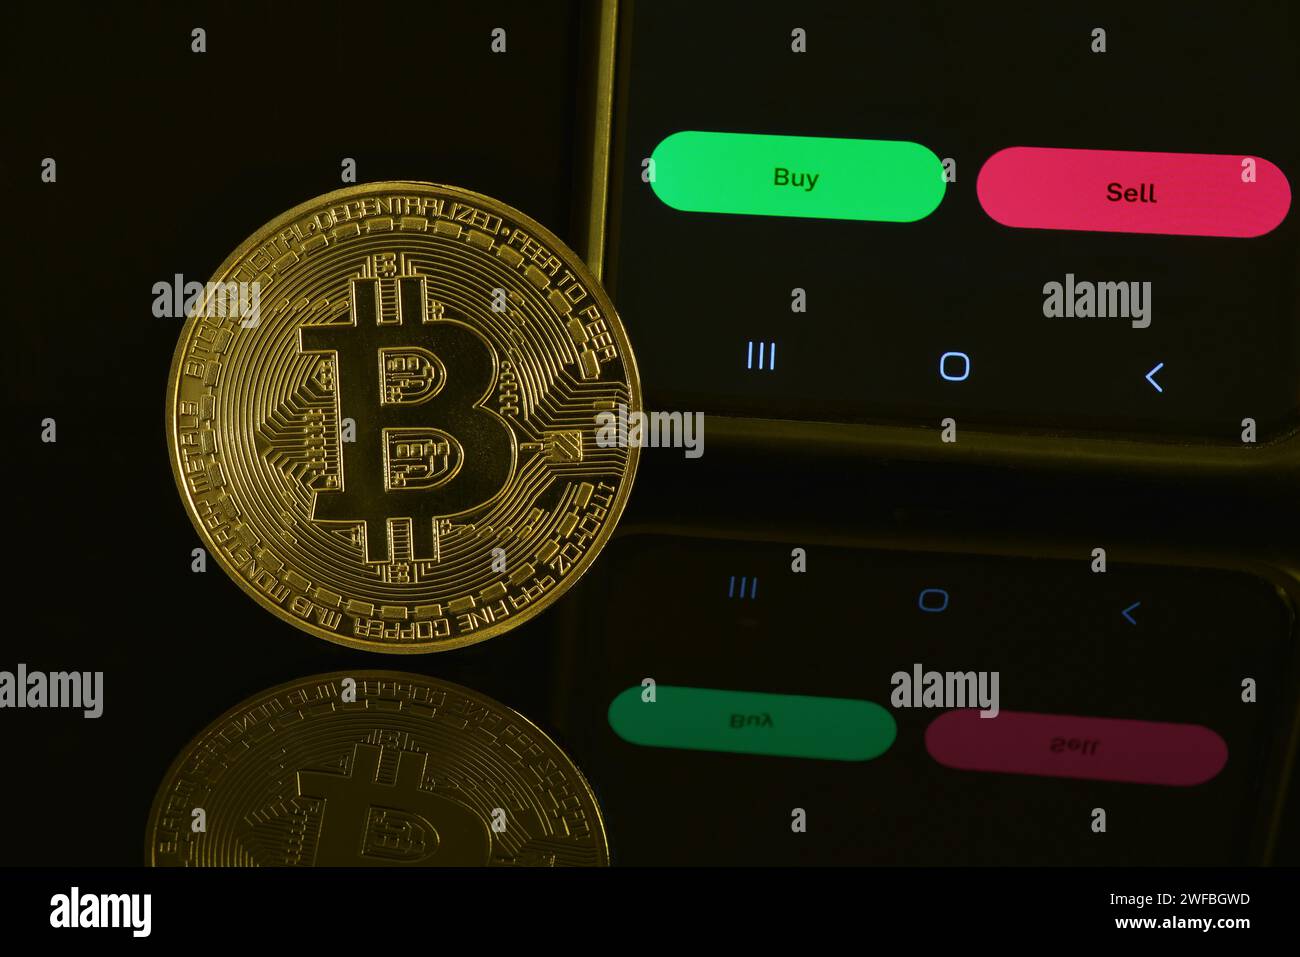 Fotografia di Bitcoin dorato su una superficie nera riflettente, compresi i pulsanti di acquisto e vendita sul telefono cellulare per investimenti o trading. Foto Stock